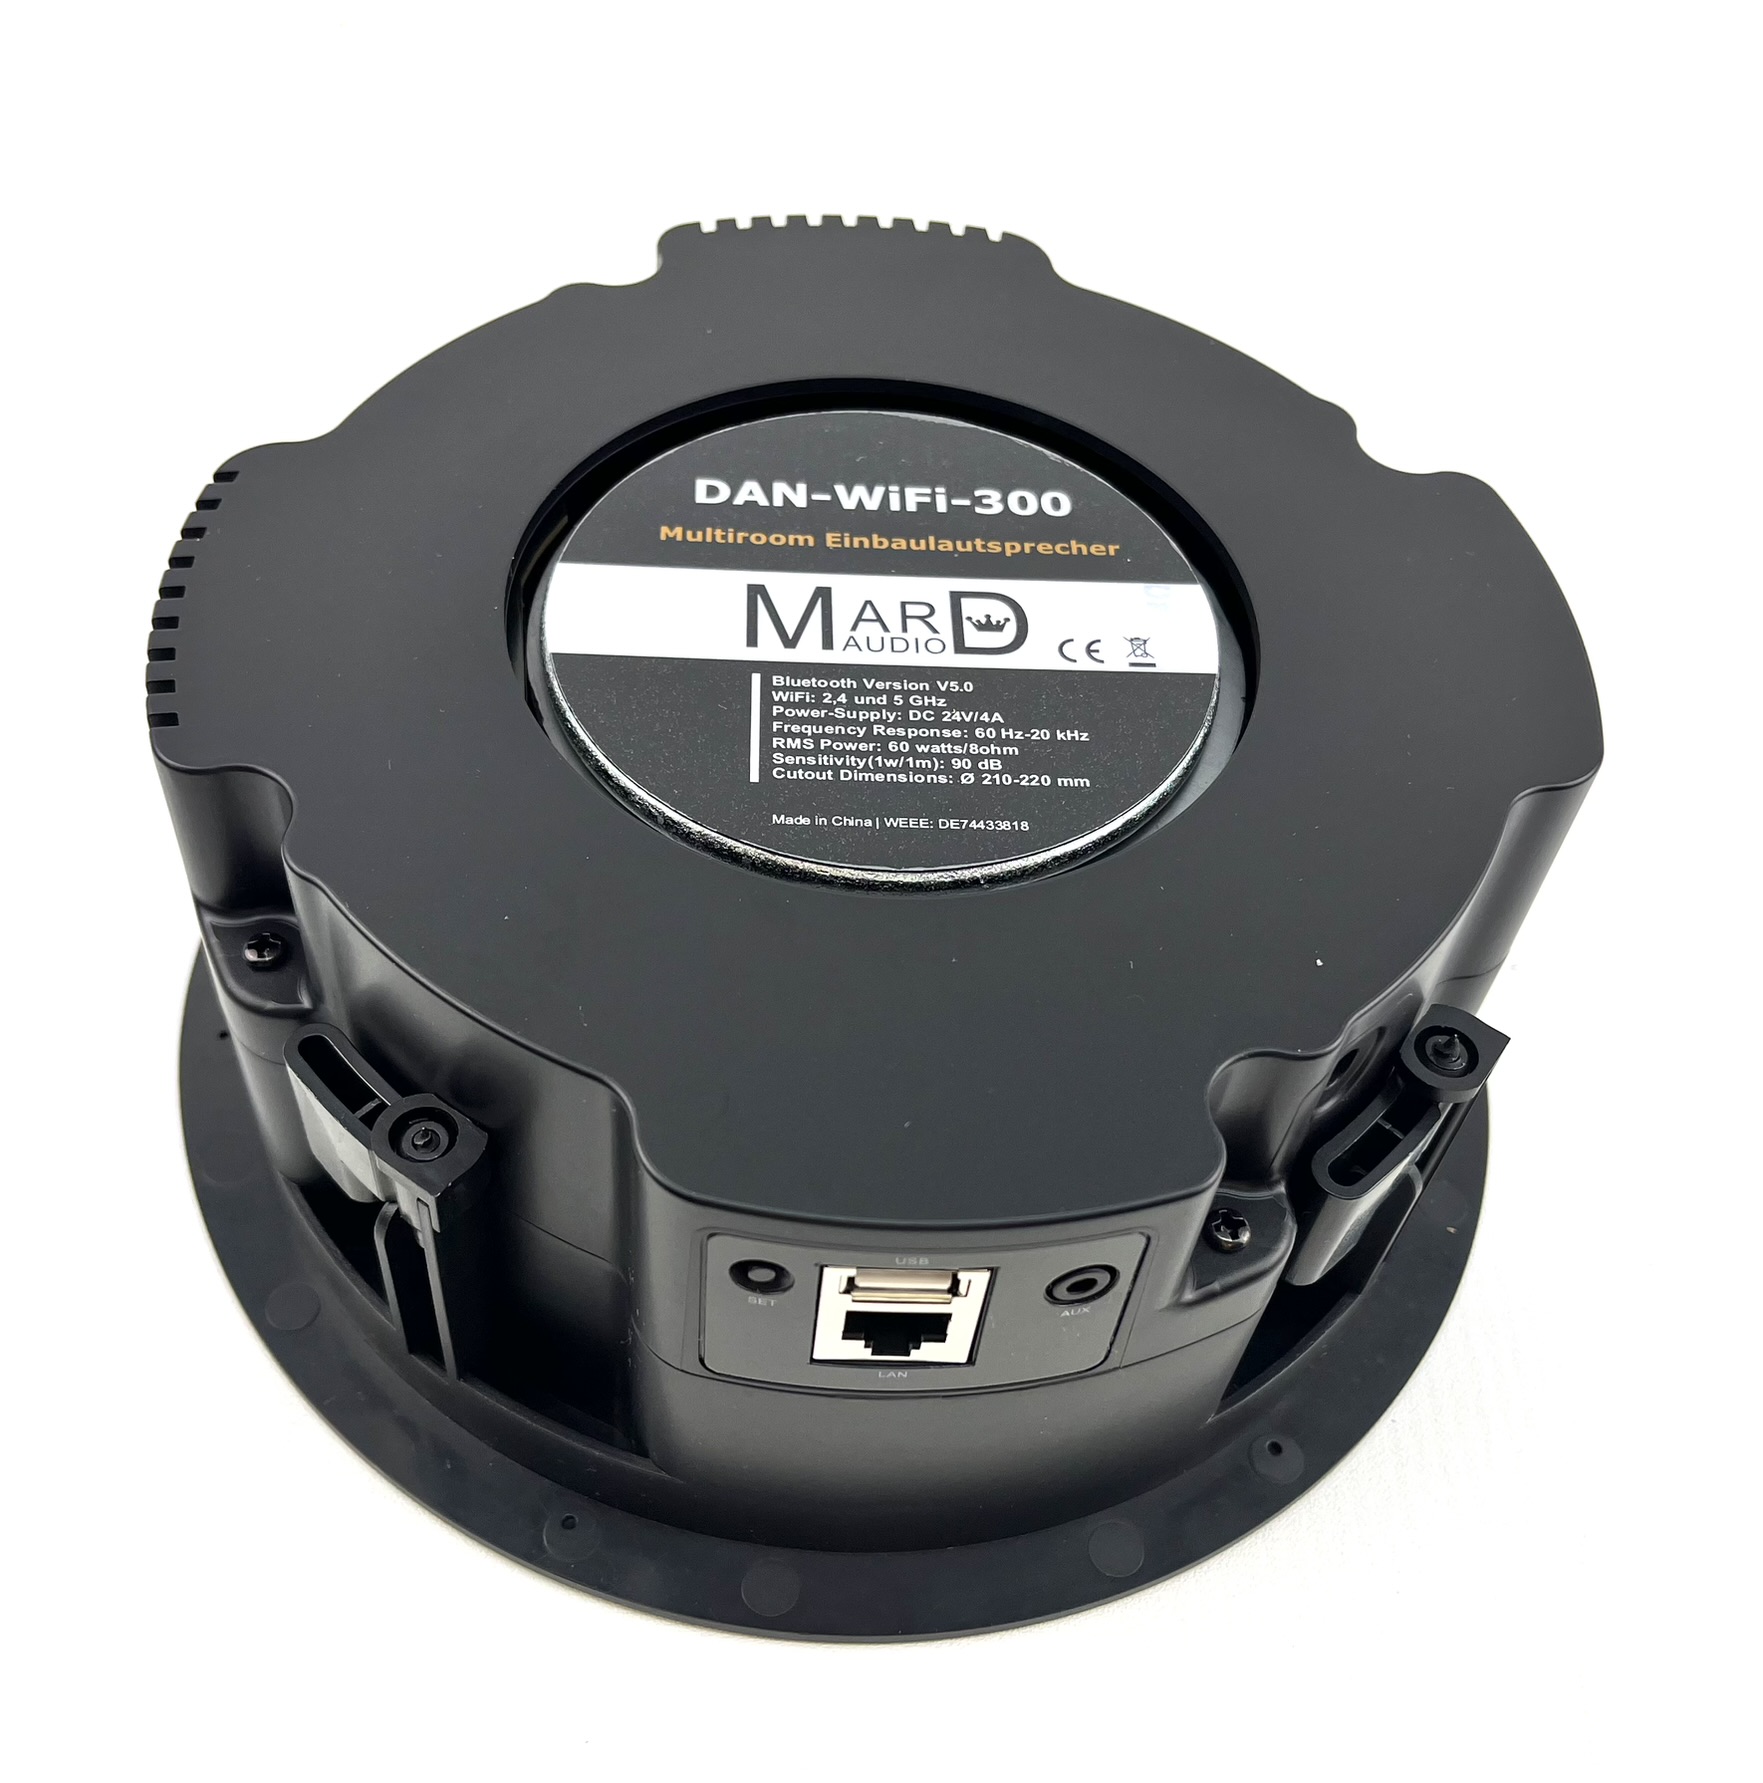 Netzwerklautsprecher IP Lautsprecher DAN-WiFi-300 WLAN Lautsprecher Multiroom